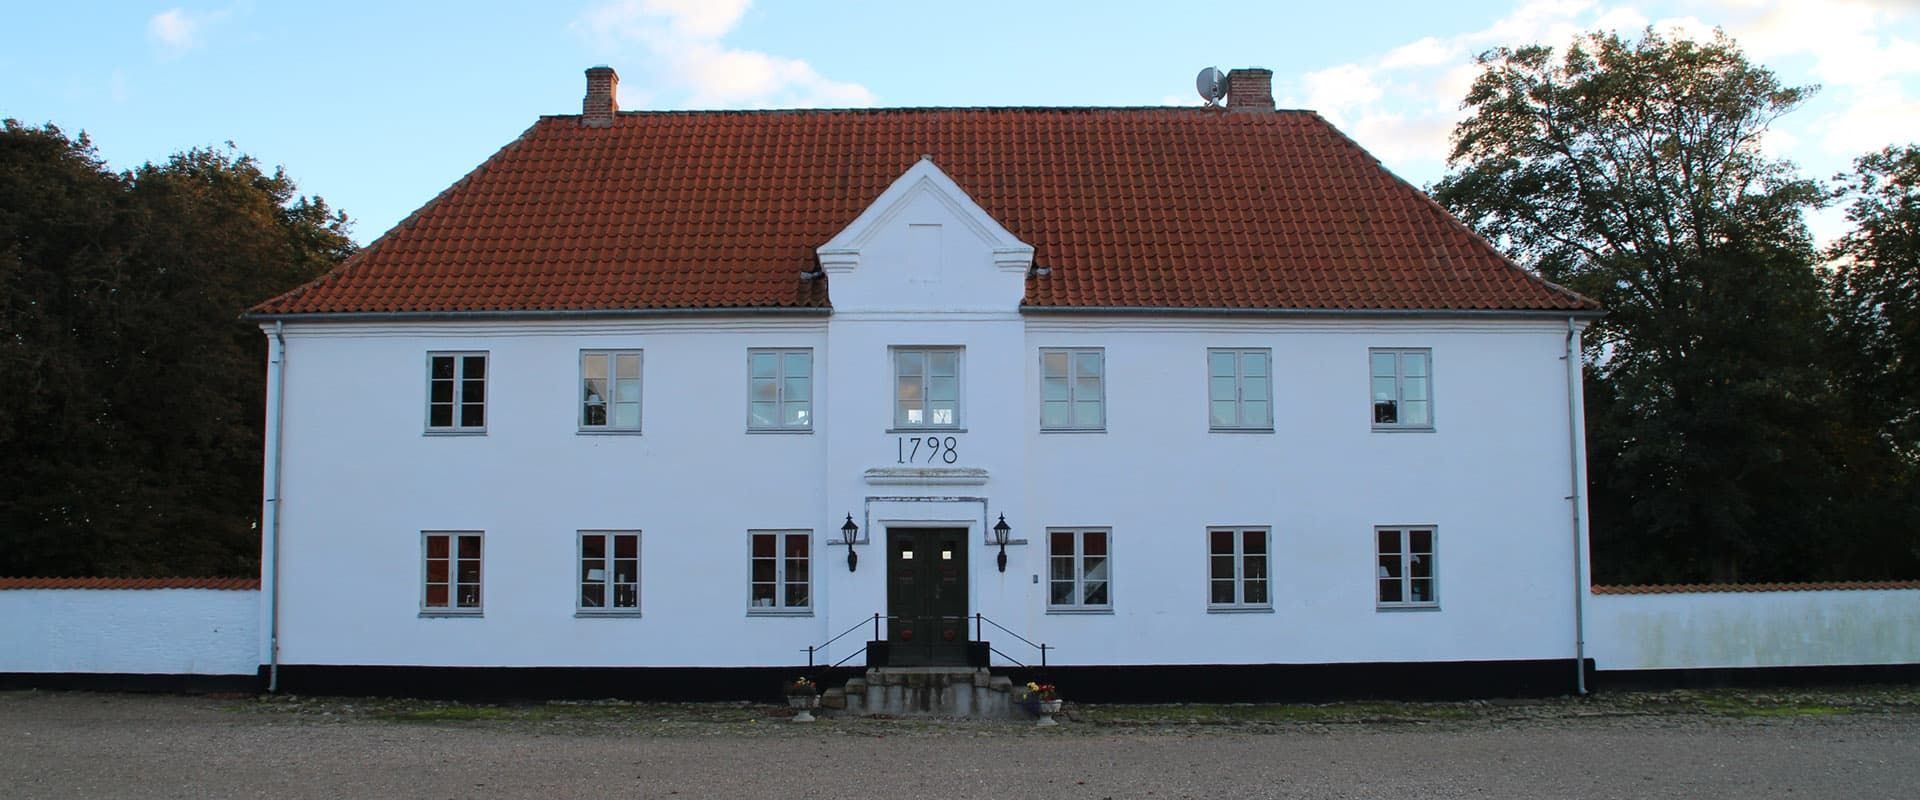 Dänemark: Urlaub im Herrenhaus Strandet Hovedgaard ApS